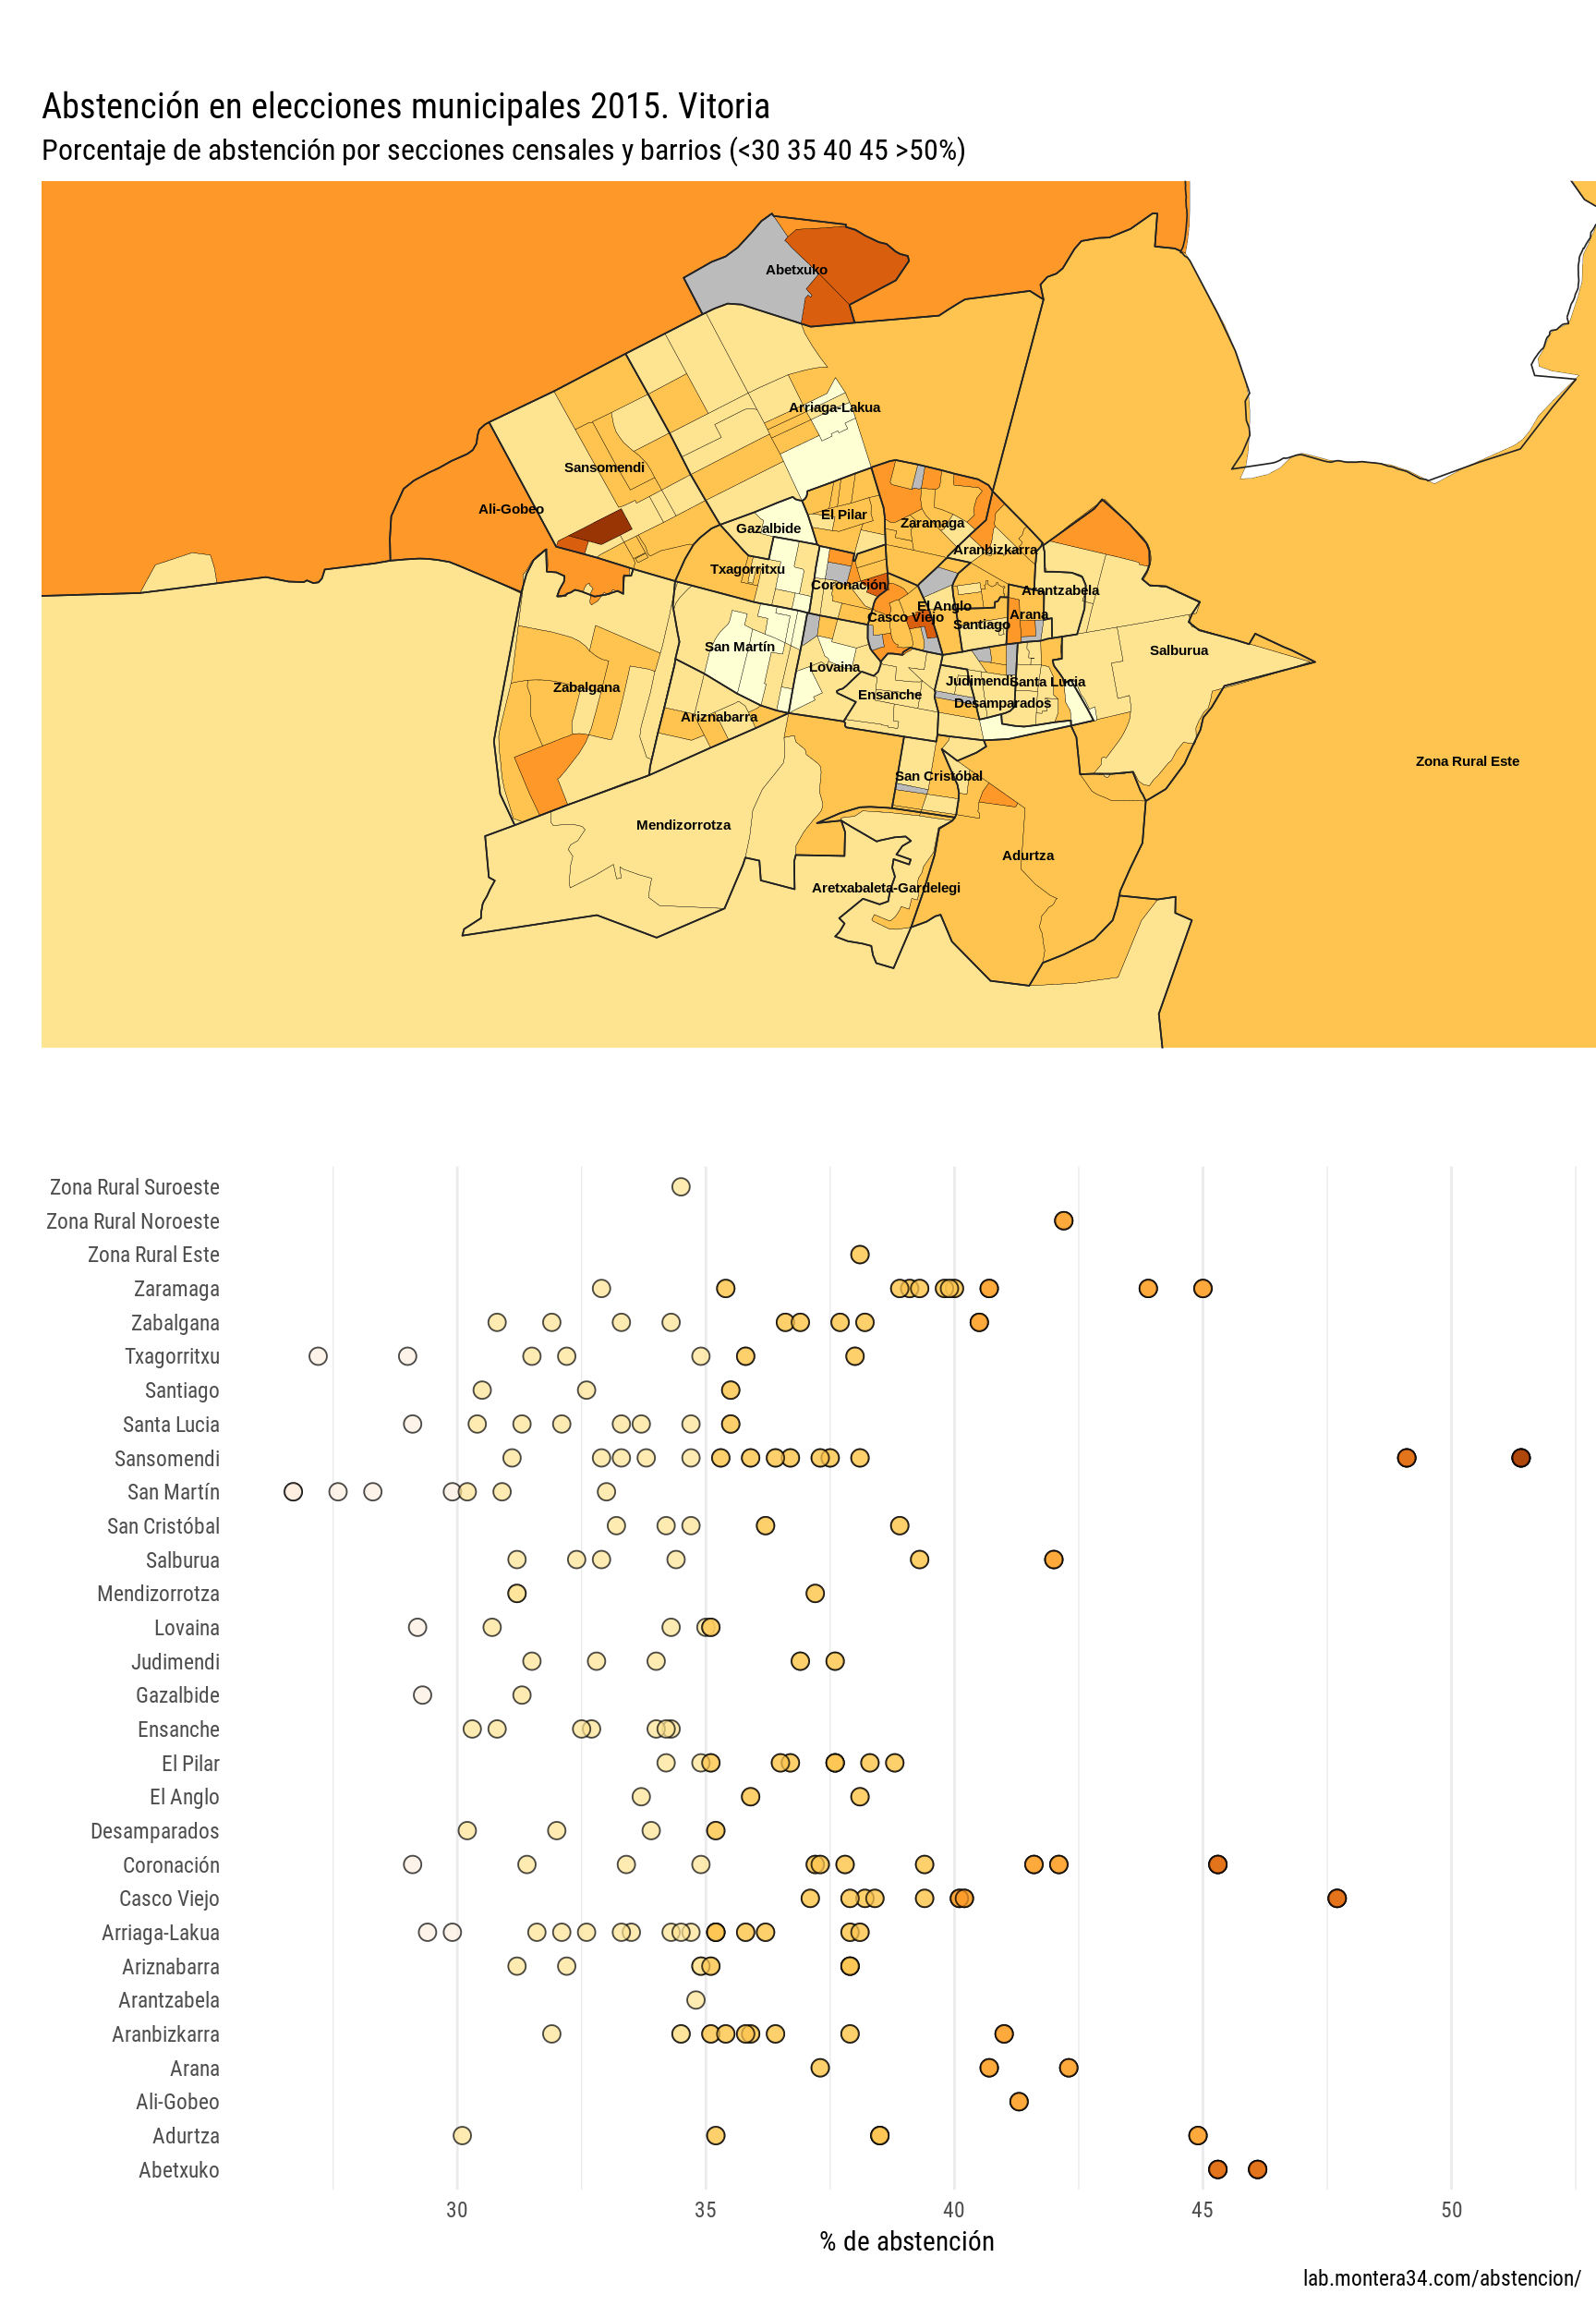 Visualización interactiva elecciones Bilbao